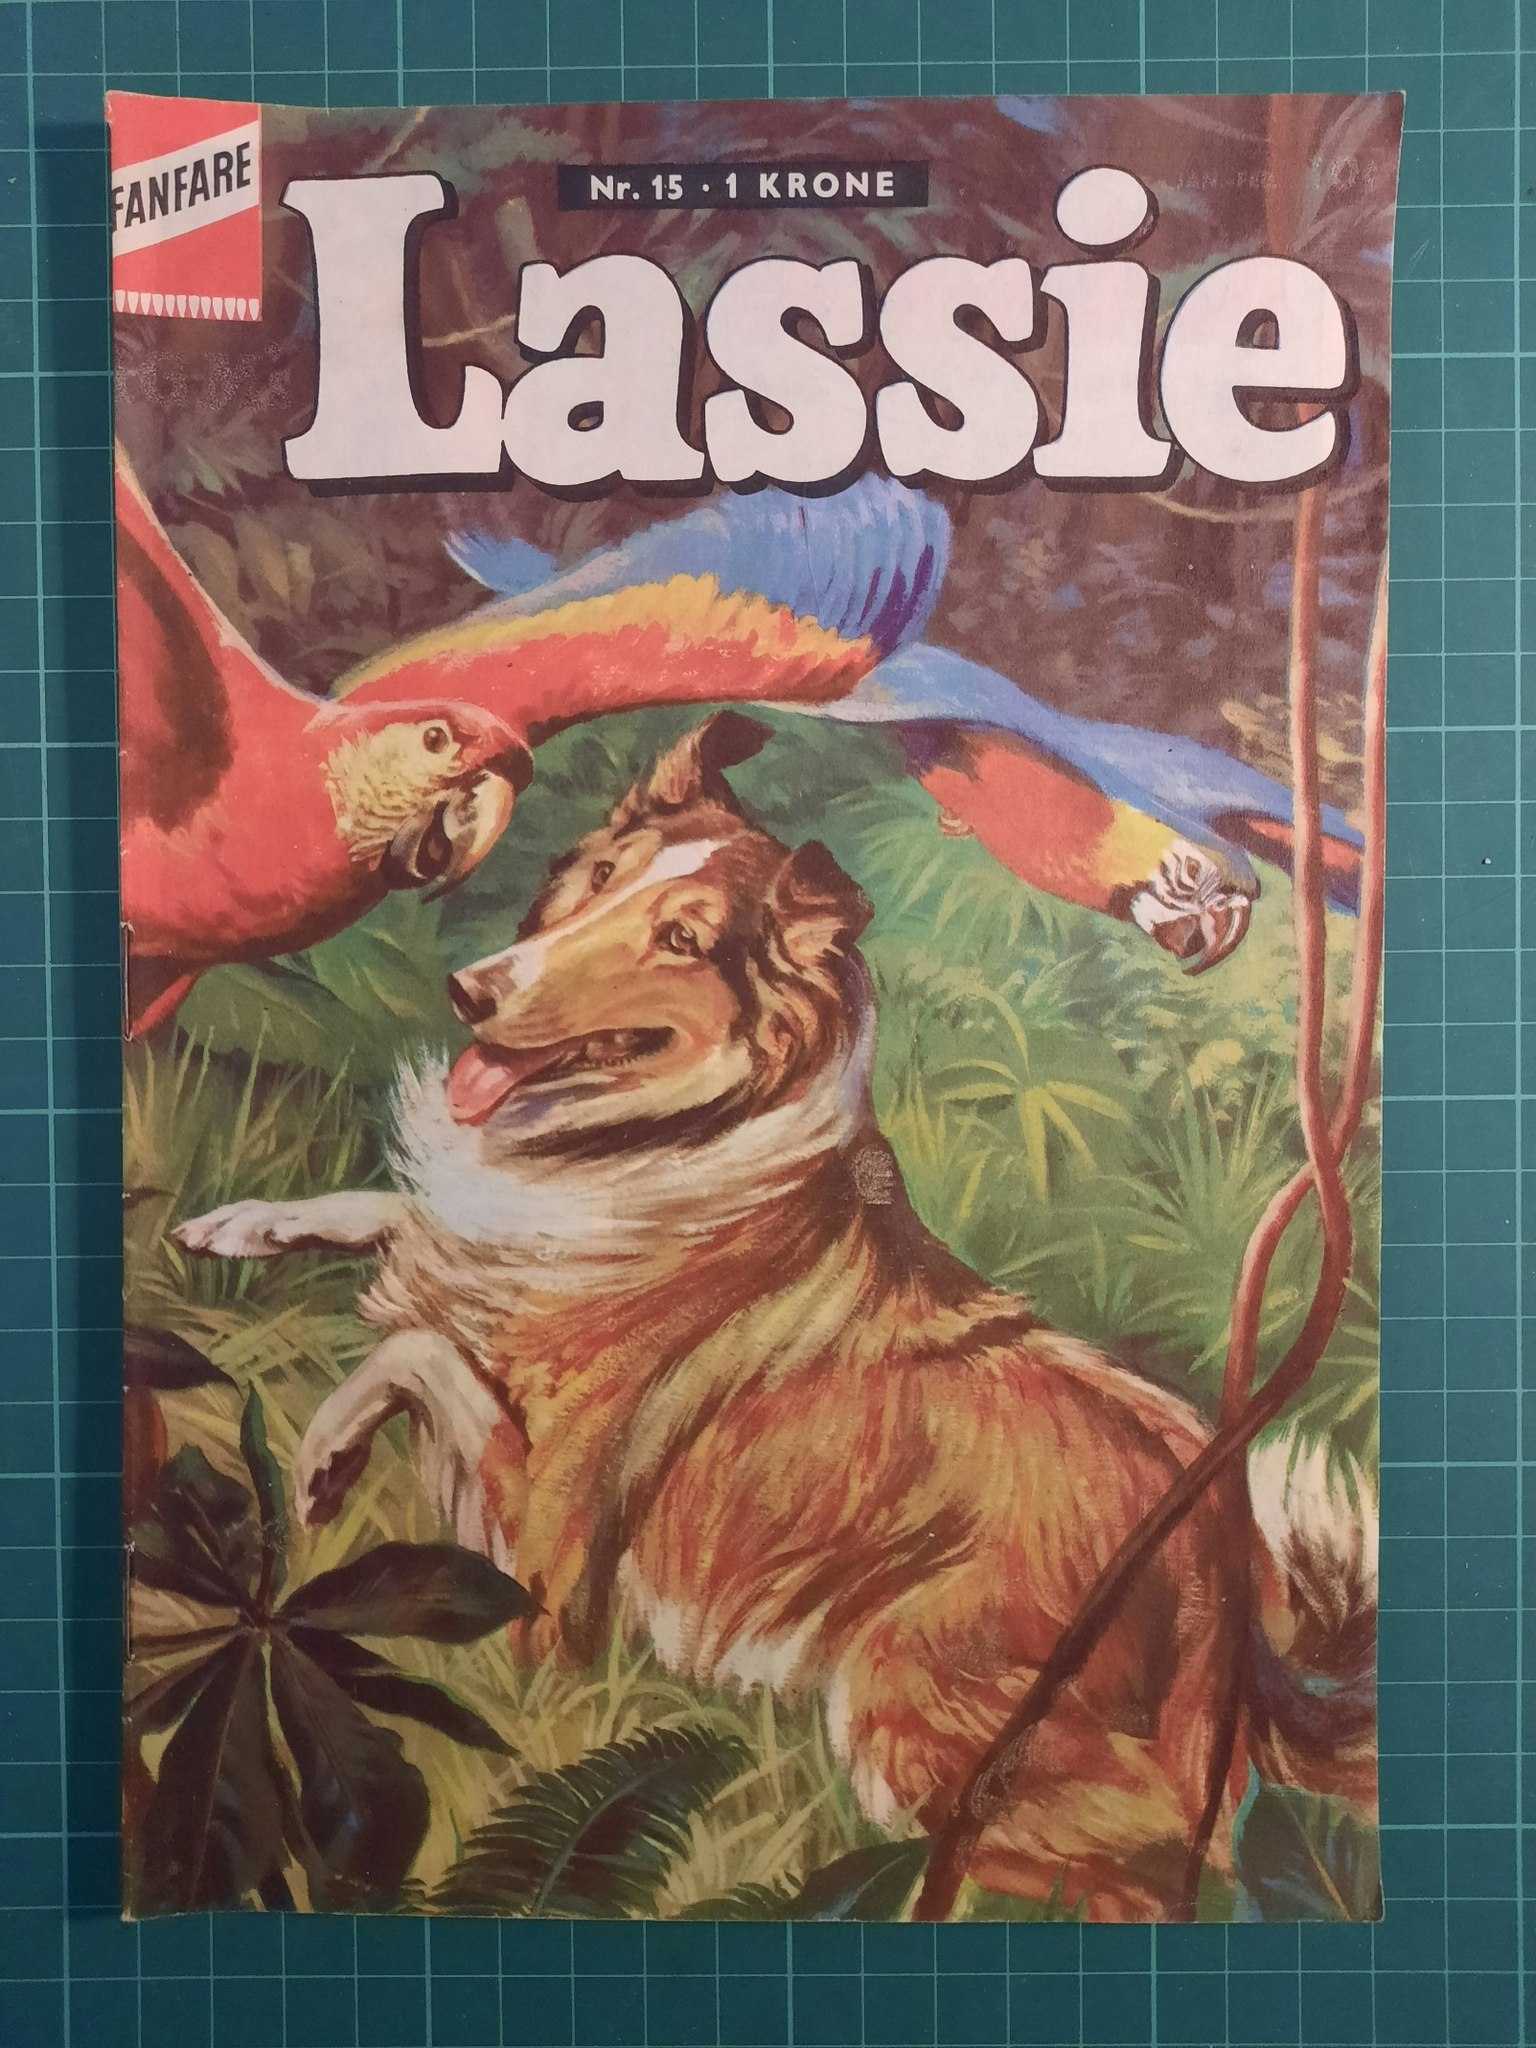 Lassie #15 (Dansk utgave fra 1963)